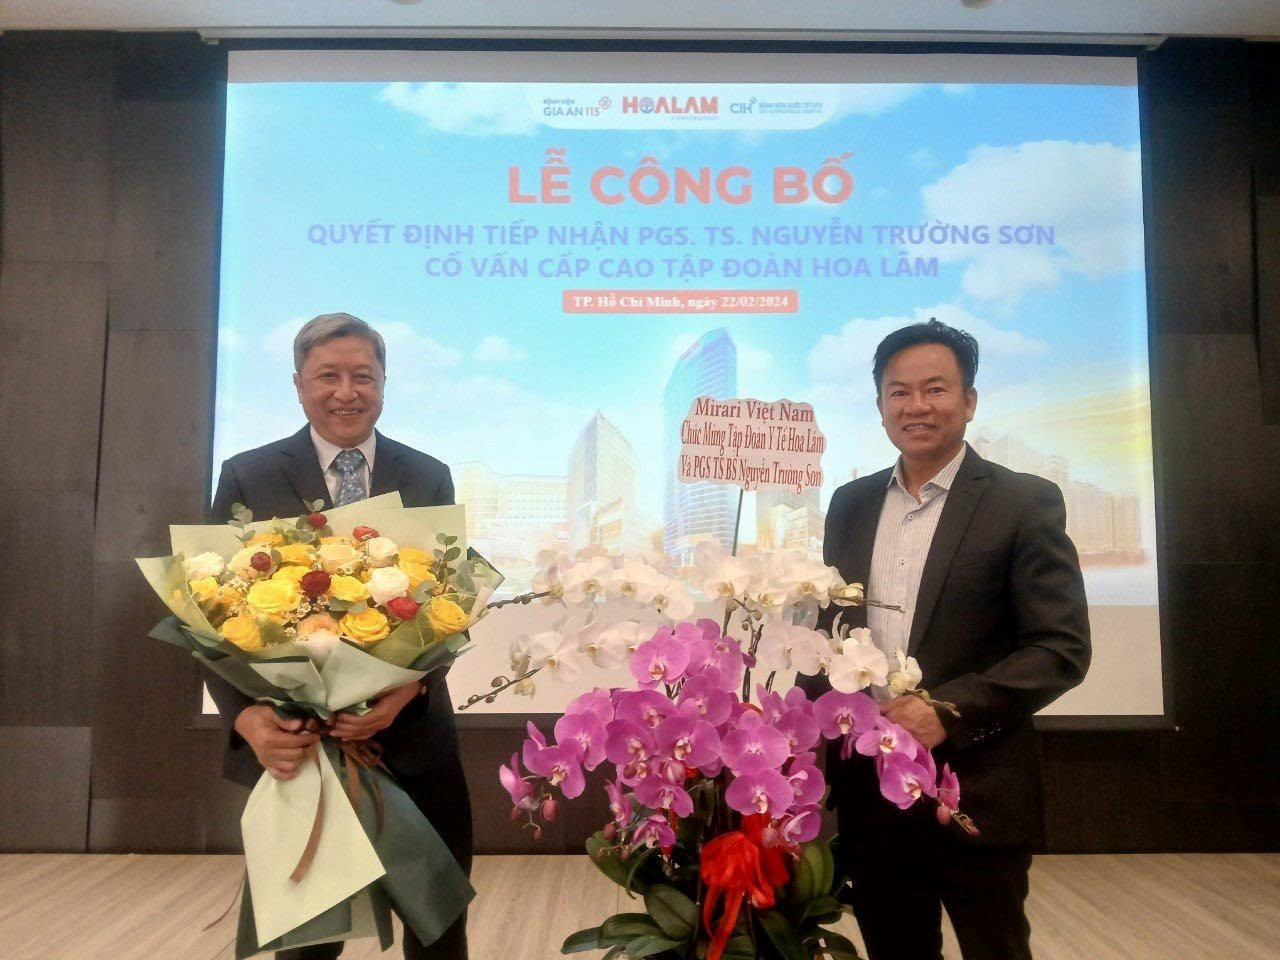 Bác sĩ Đỗ Xuân Trường, tặng hoa chúc mừng PGS-TS Nguyễn Trường Sơn